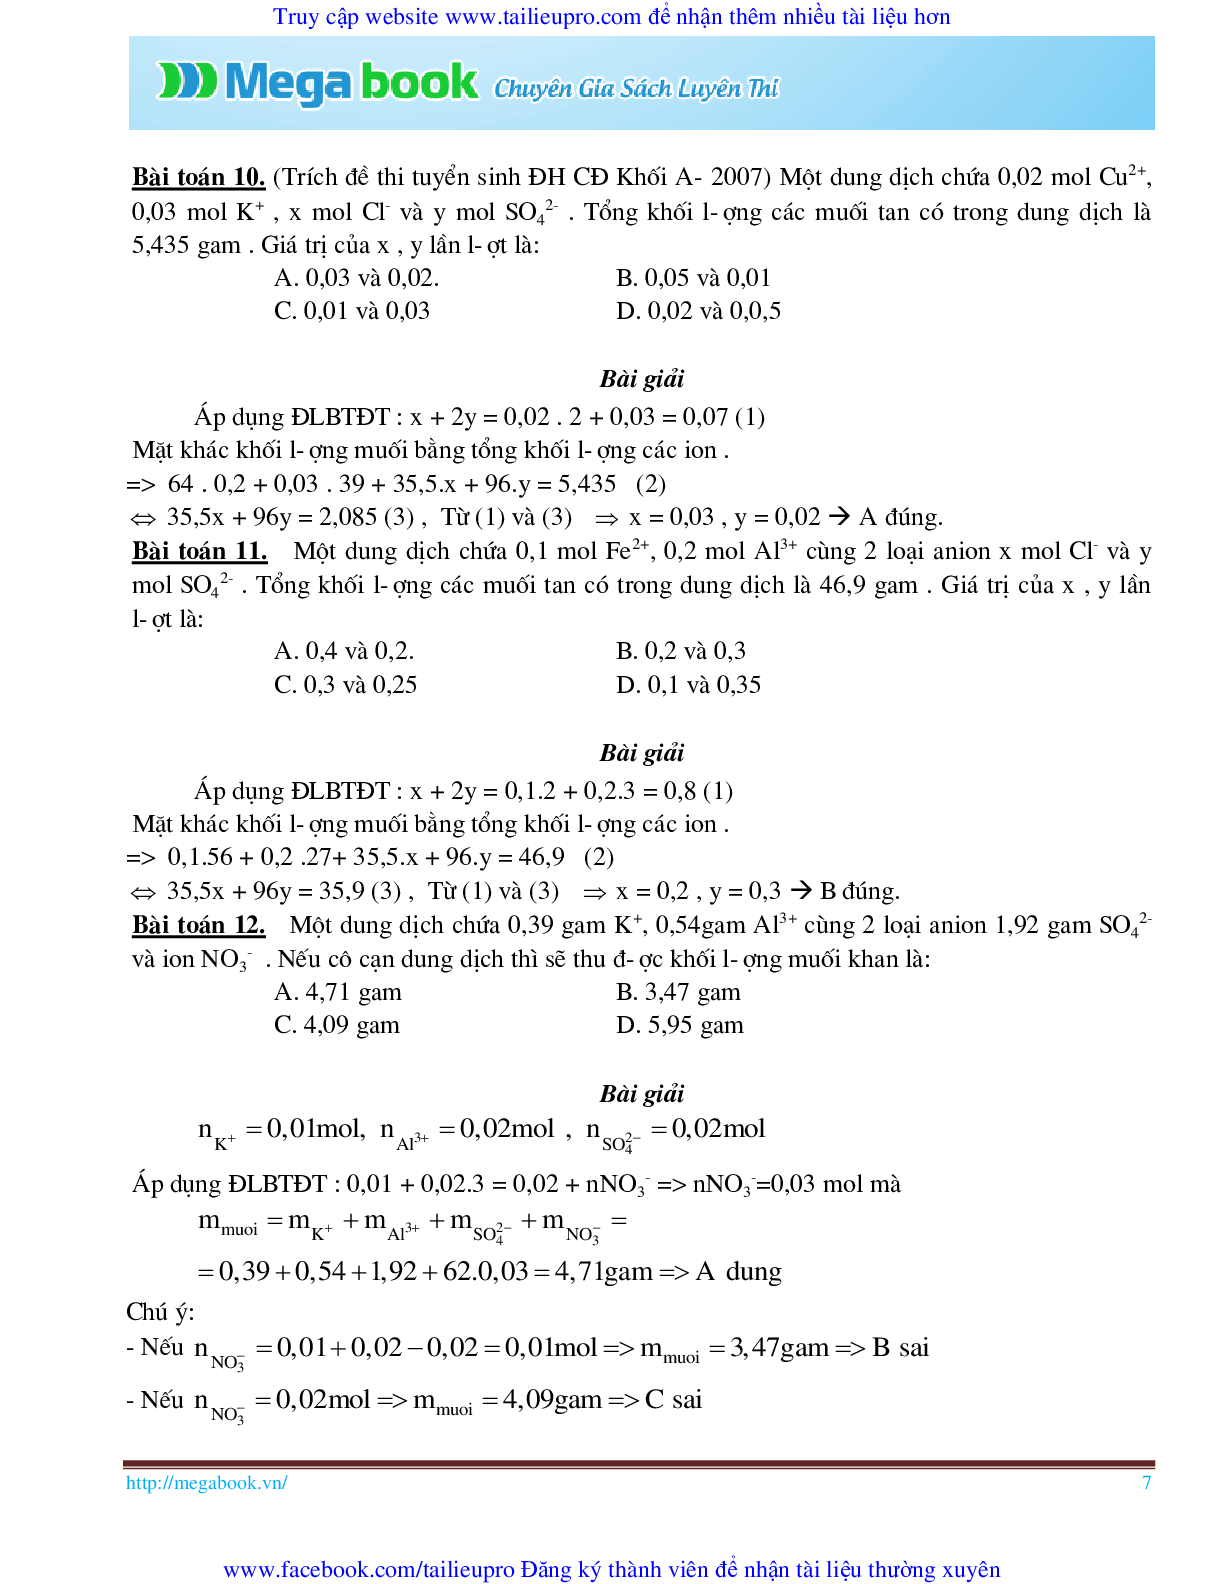 10 Bí quyết chinh phục phương pháp giải toán chủ chốt môn Hóa học ôn thi THPT Quốc Gia (trang 7)